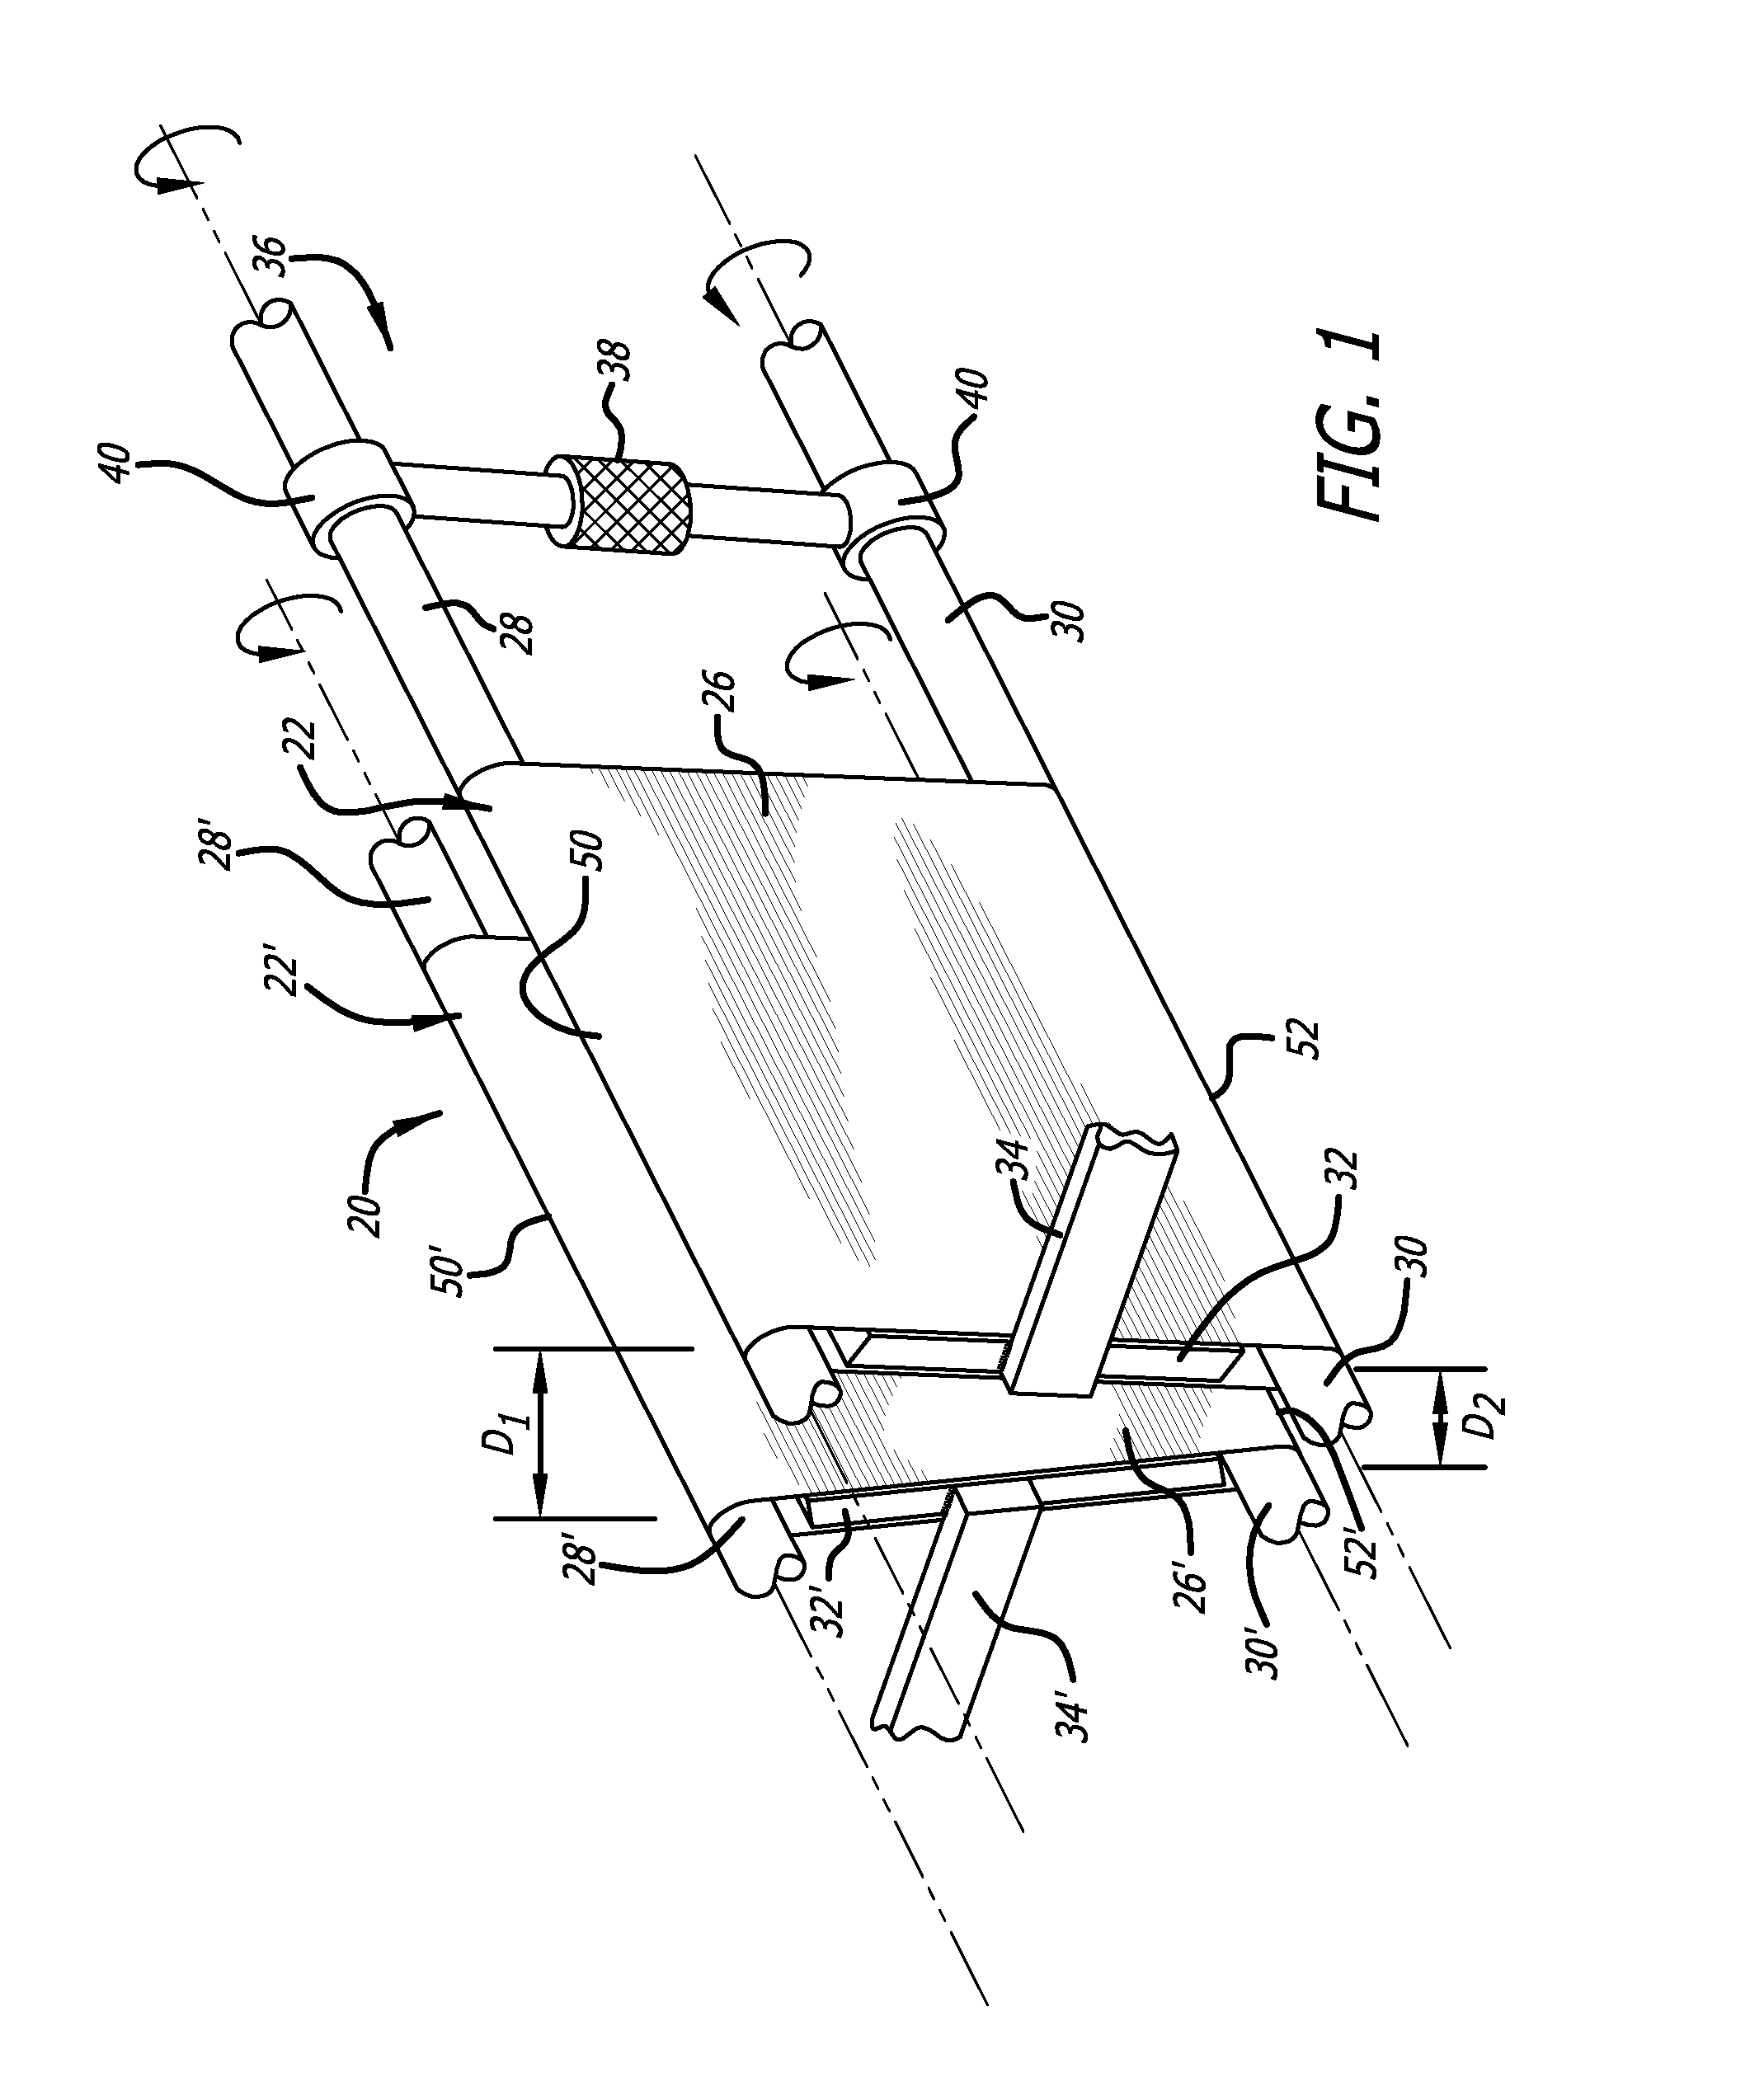 Stent crimping apparatus